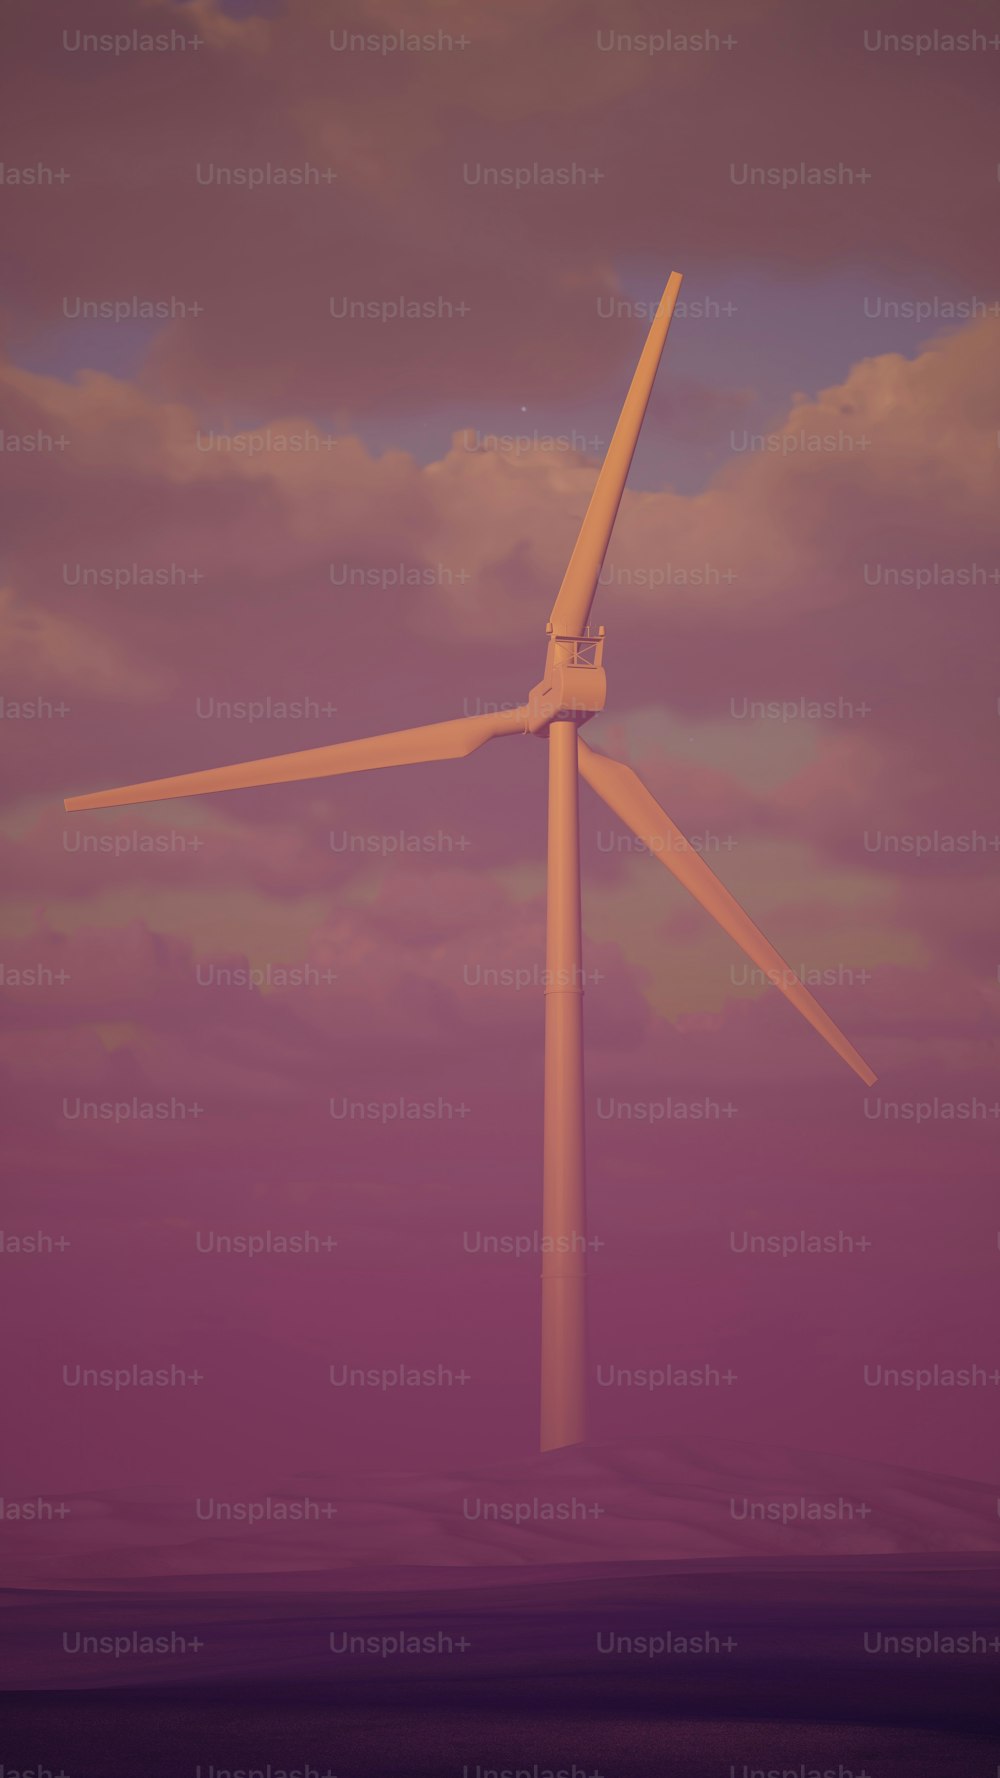 Una turbina eólica en medio de un cielo púrpura